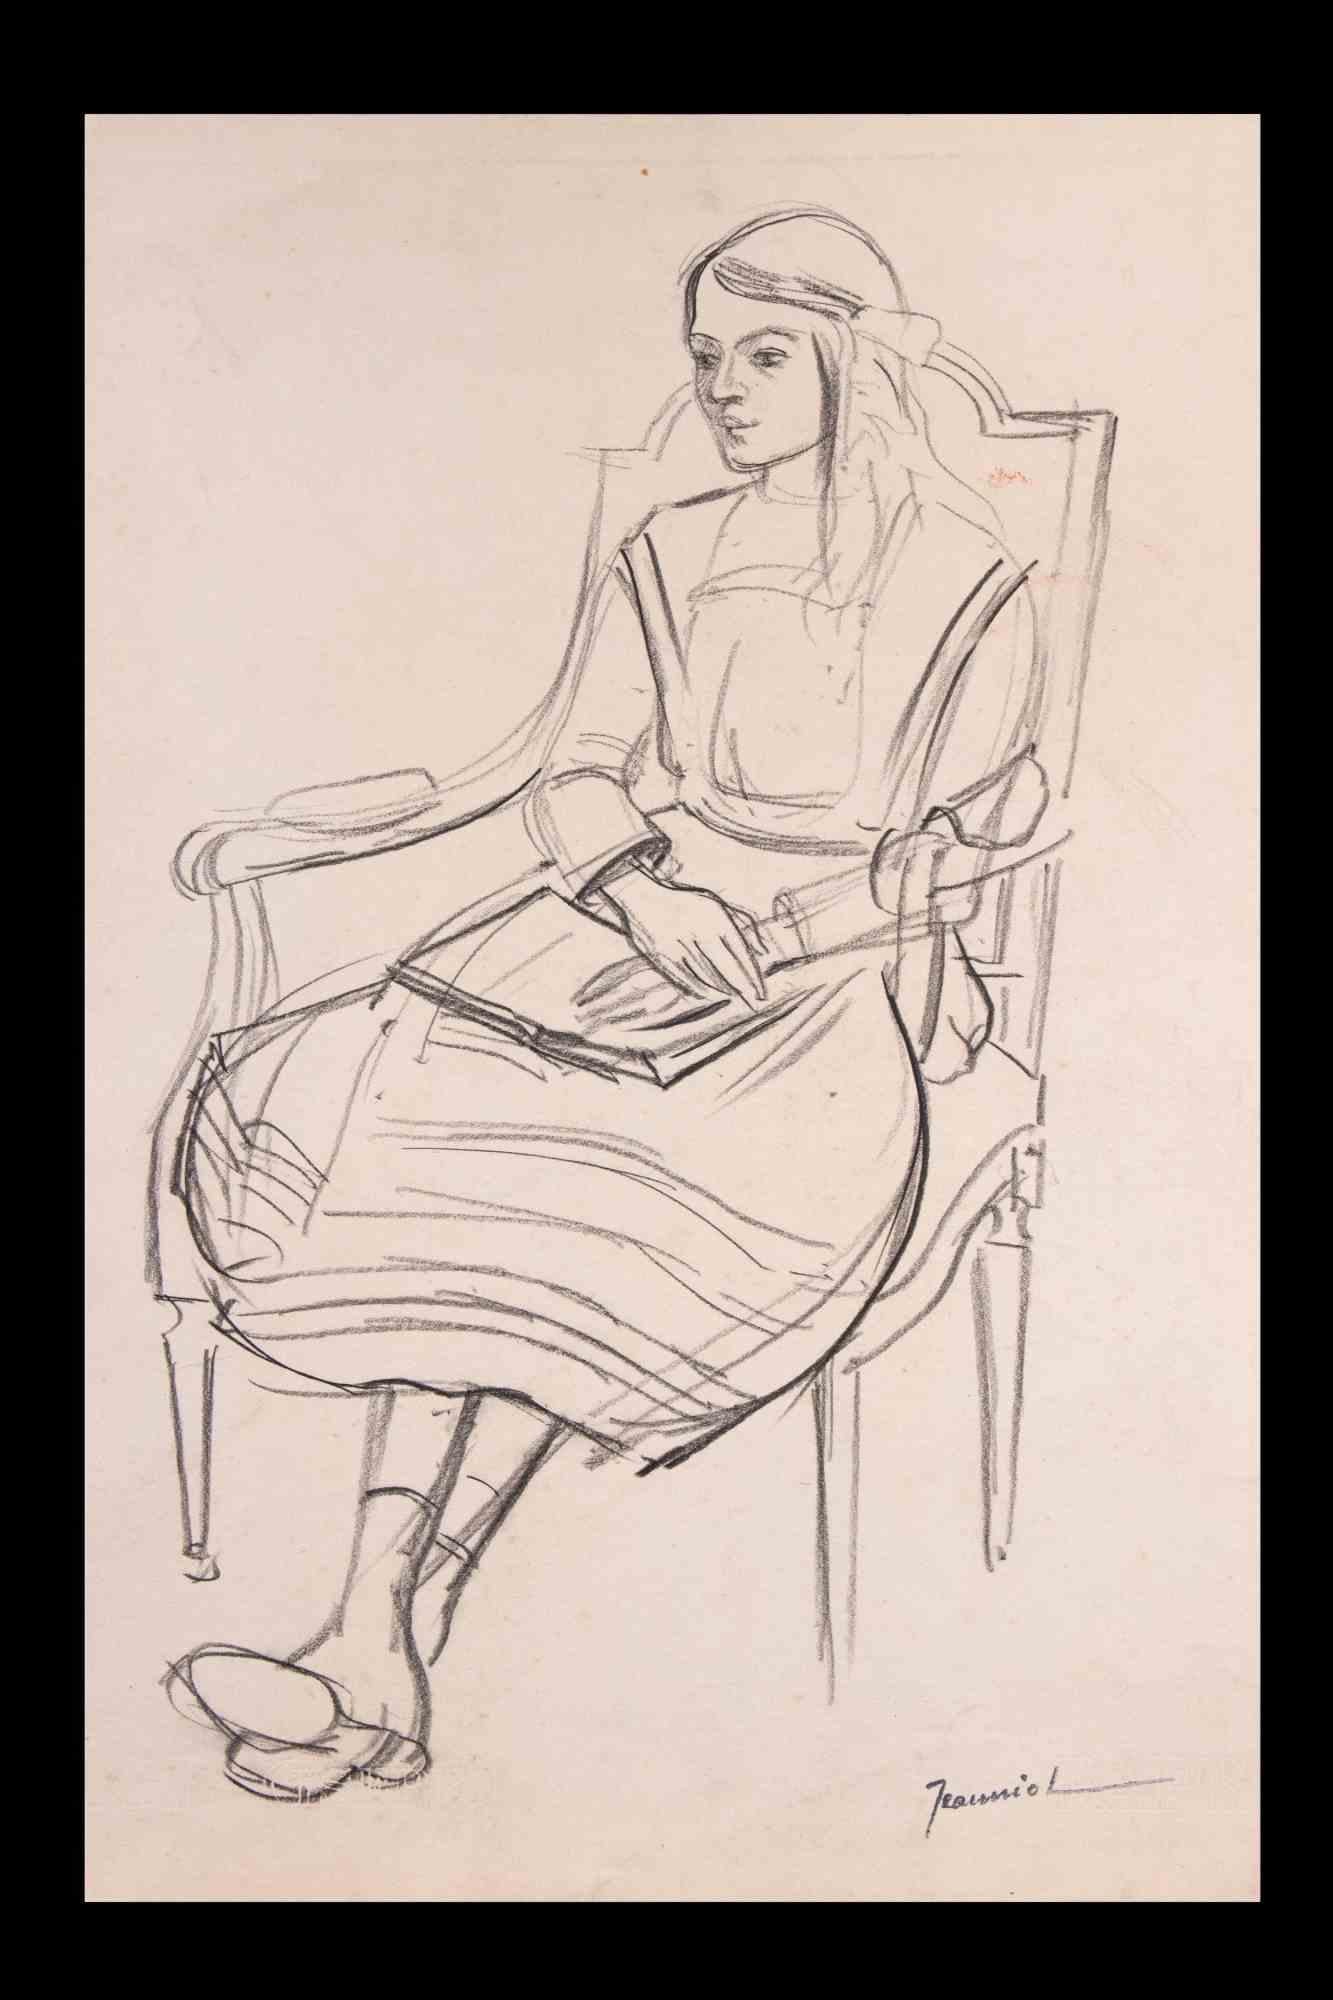 Frau in Ruhe ist eine Original-Zeichnung auf Papier des Malers Pierre Georges Jeanniot (1848-1934).

Zeichnen mit Bleistift.

Handsigniert auf der Unterseite.

Gute Bedingungen.

Pierre-Georges Jeanniot (1848-1934) war ein